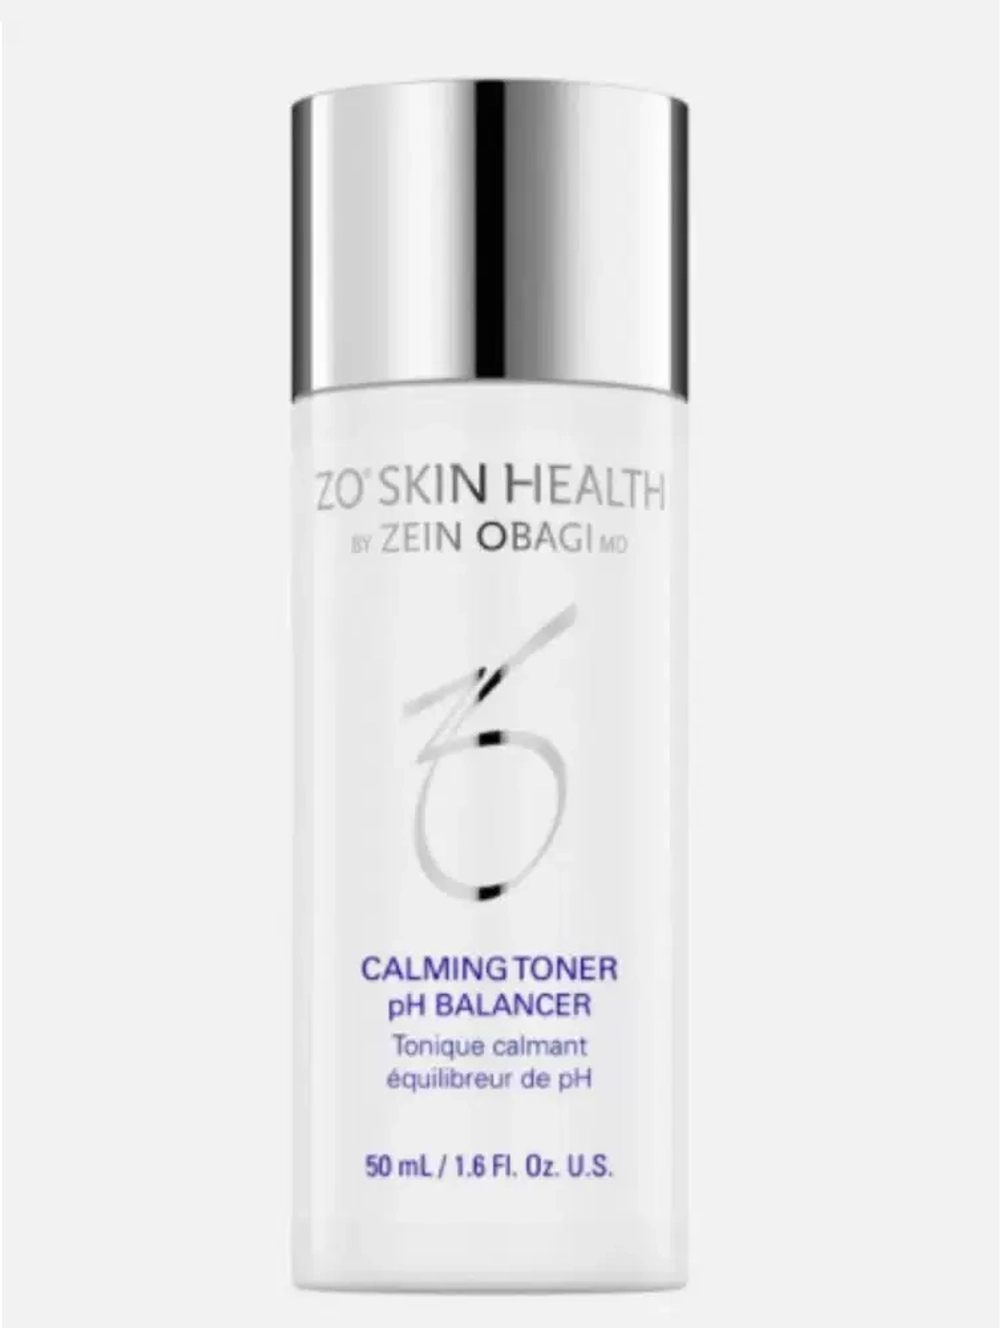 ZO OBAGI skin health Calming Toner 50 ml